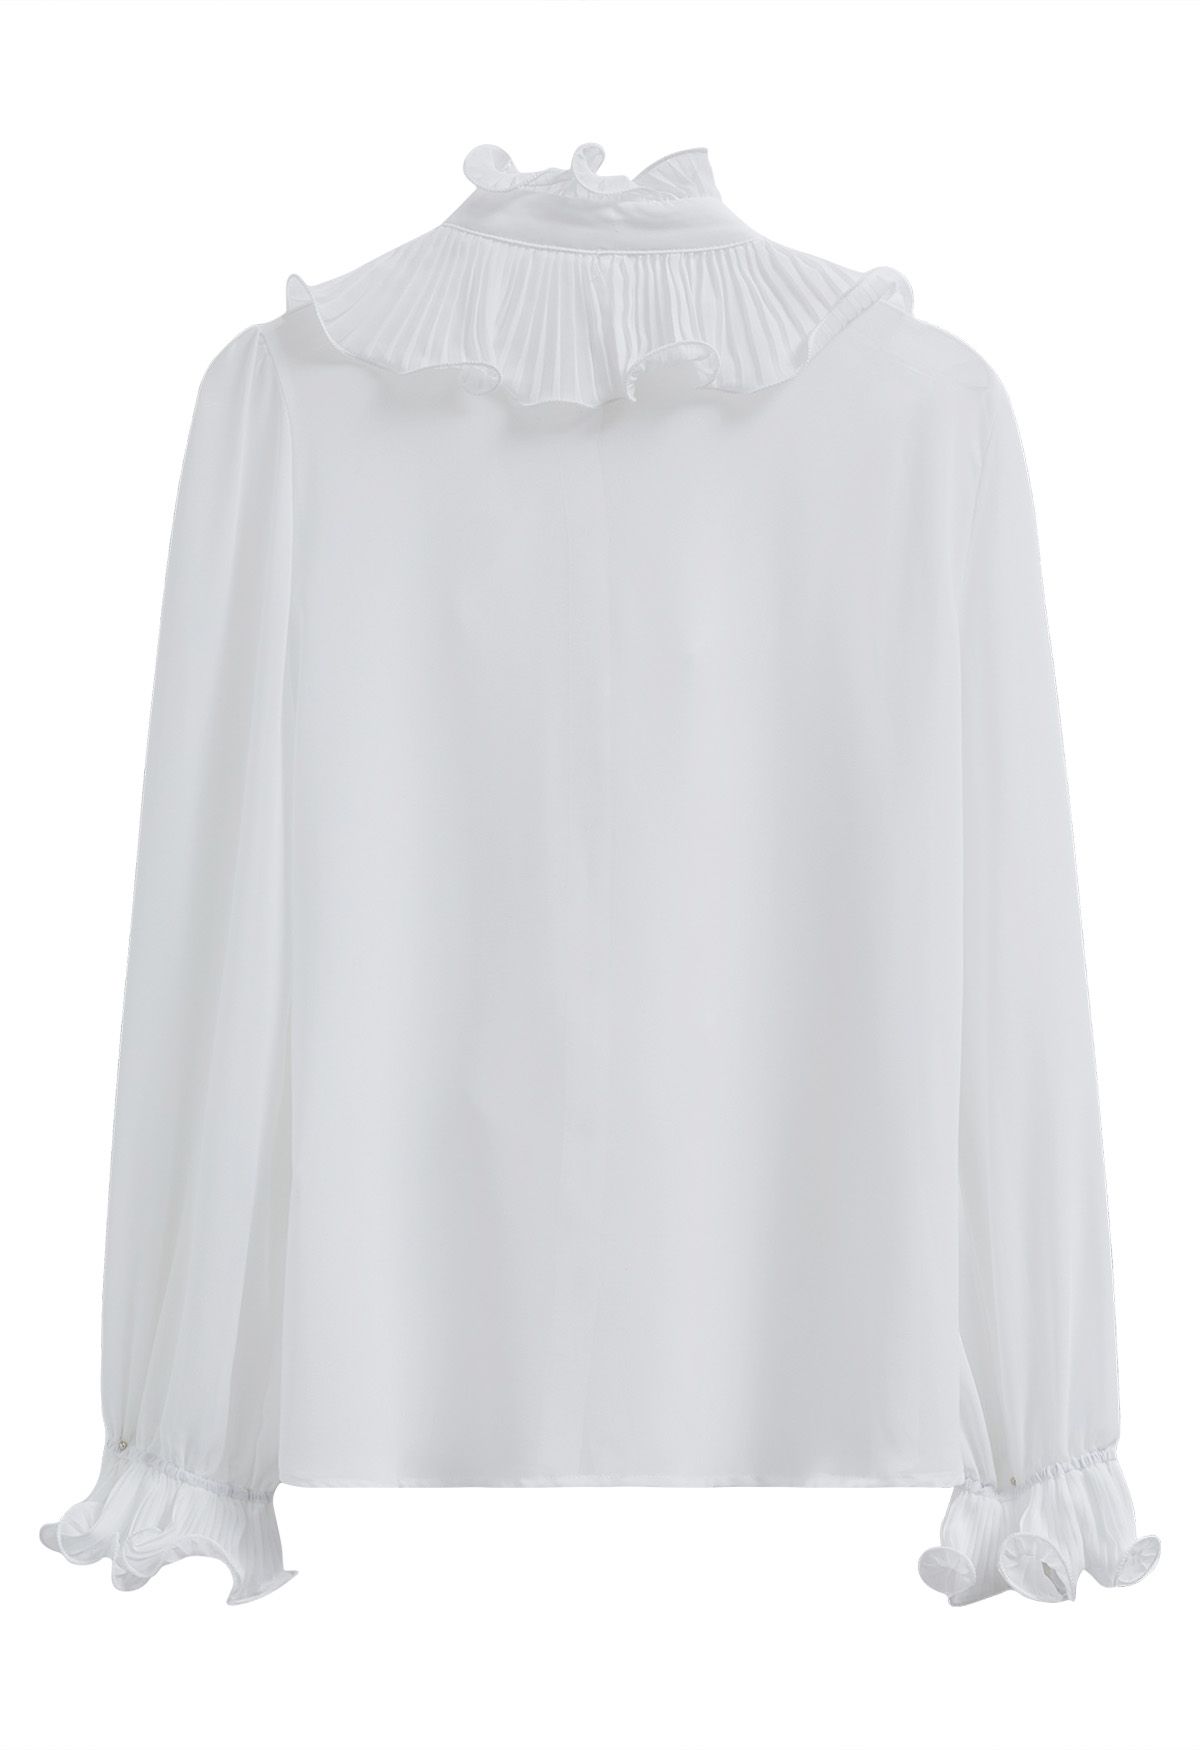 Ruffle Romance Chiffon Button-Up Shirt in White